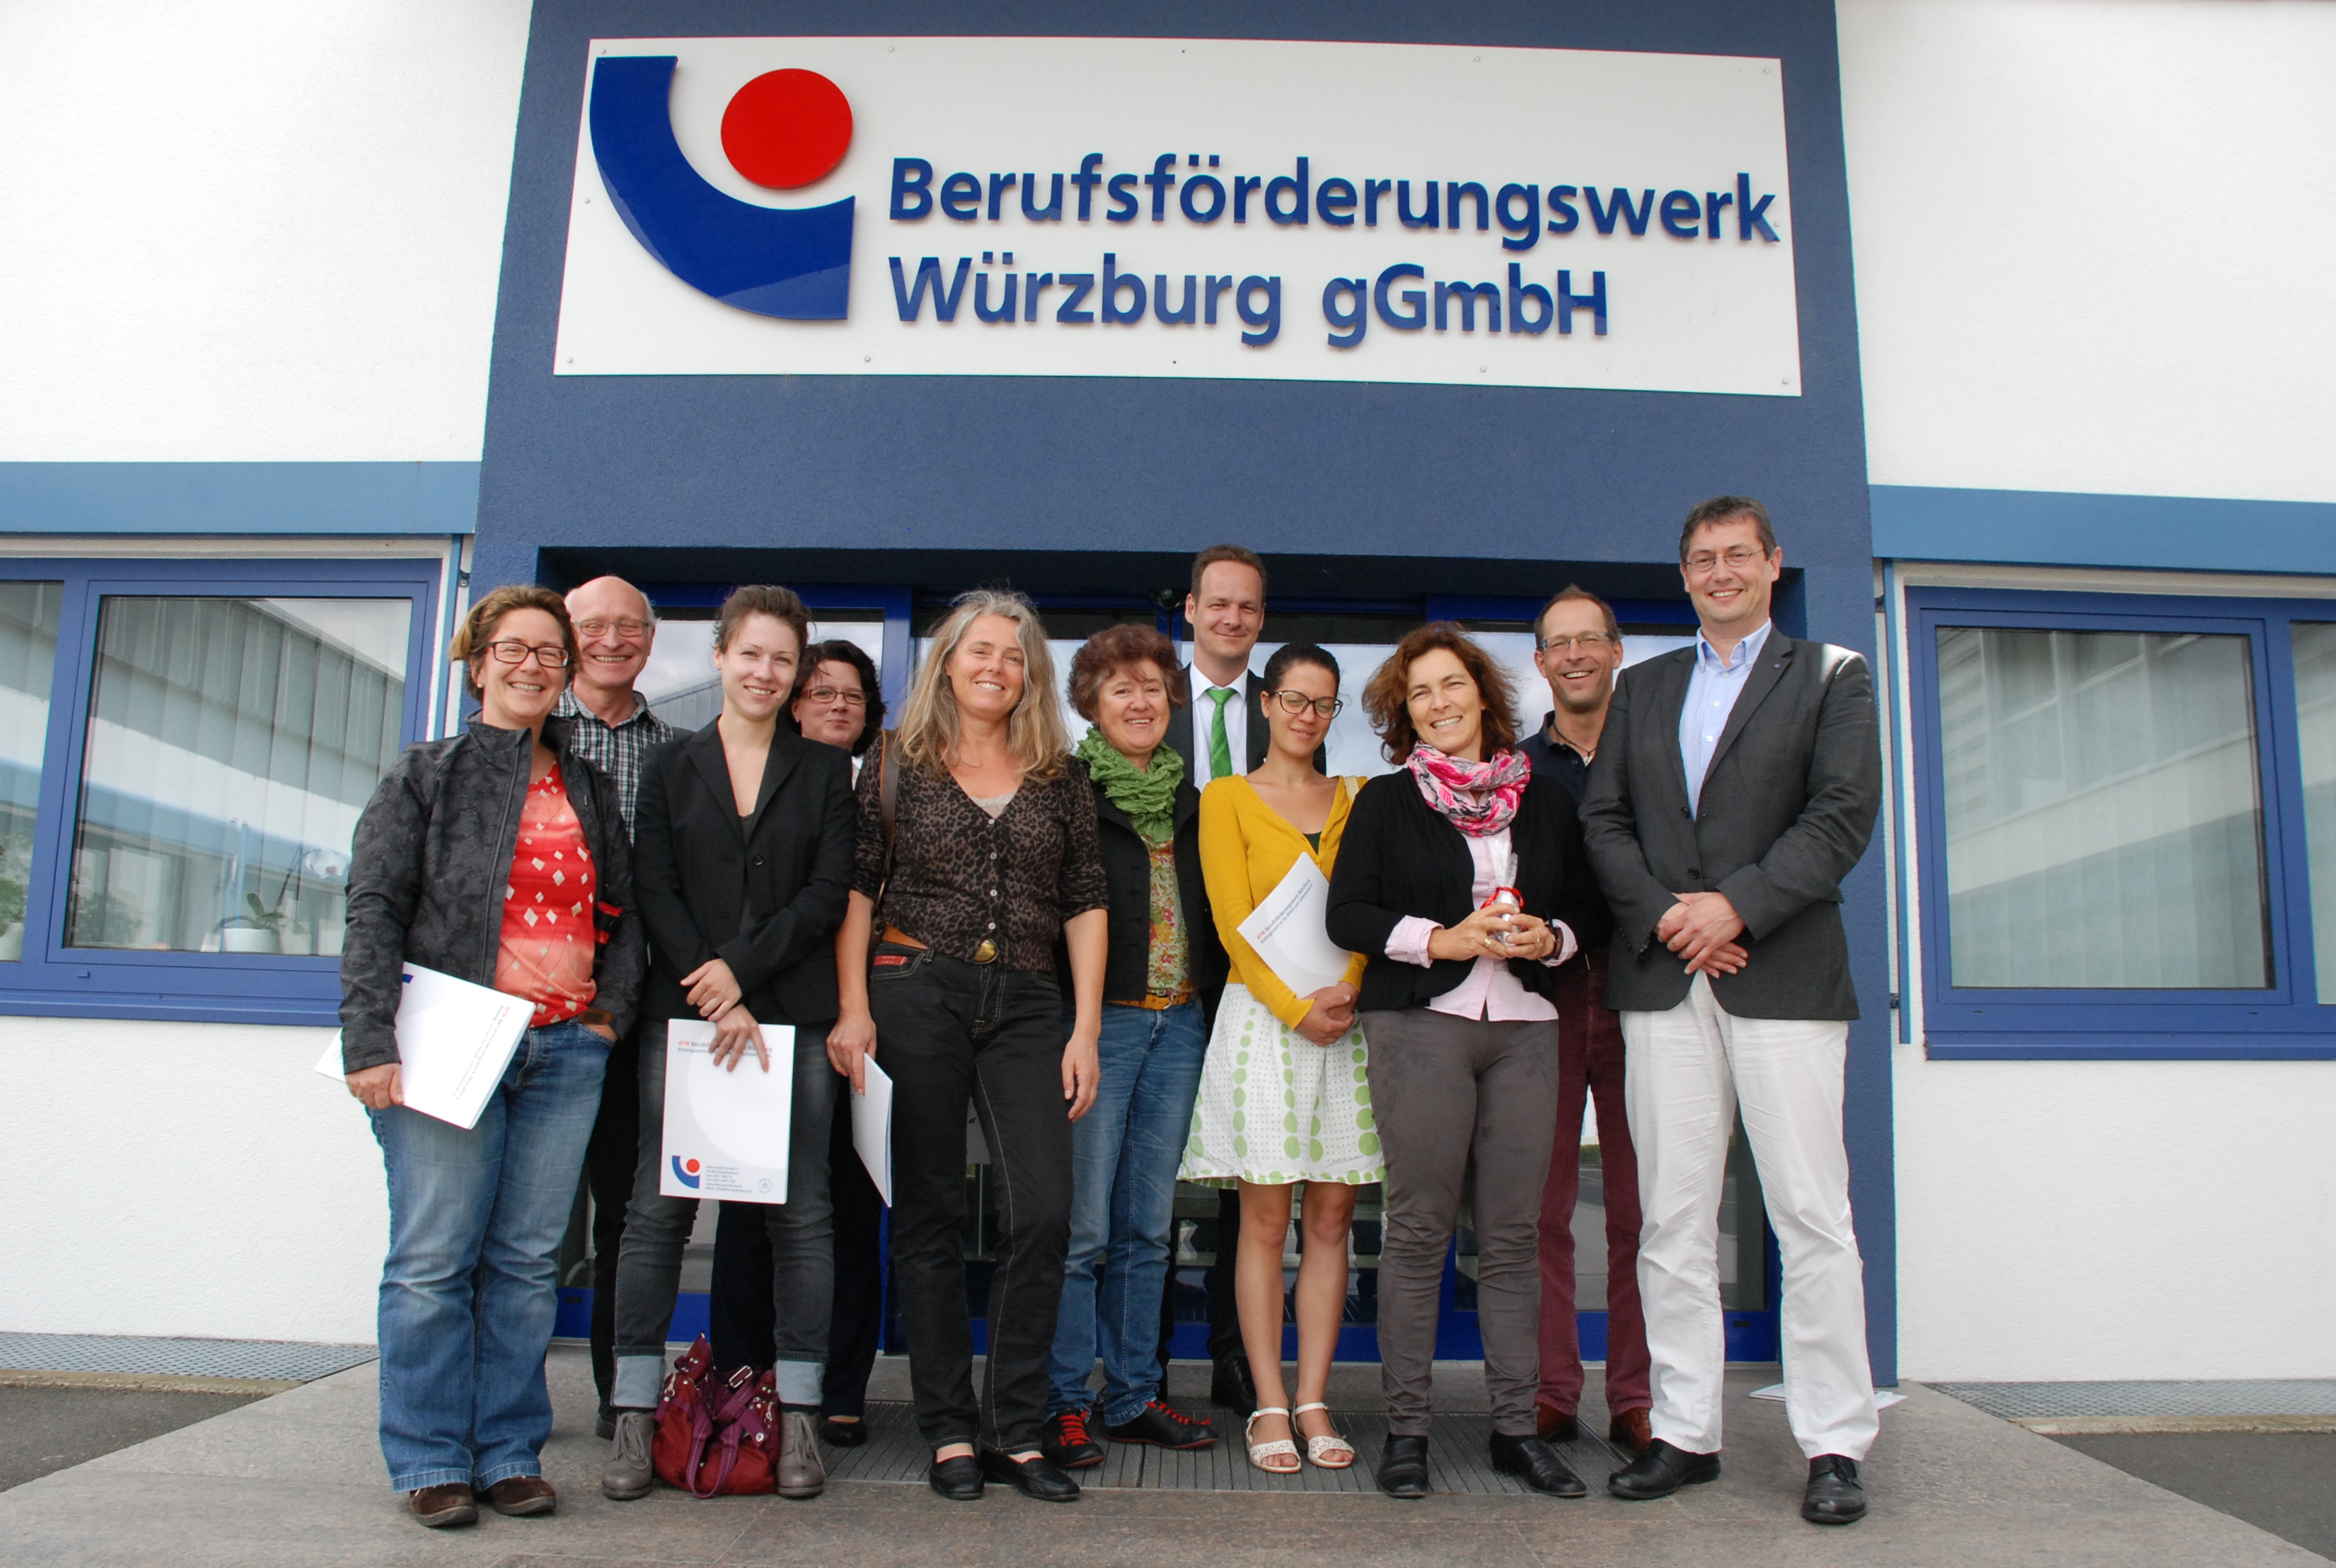 Gruppenfoto vor dem Berufsförderungswerk in Würzburg. 